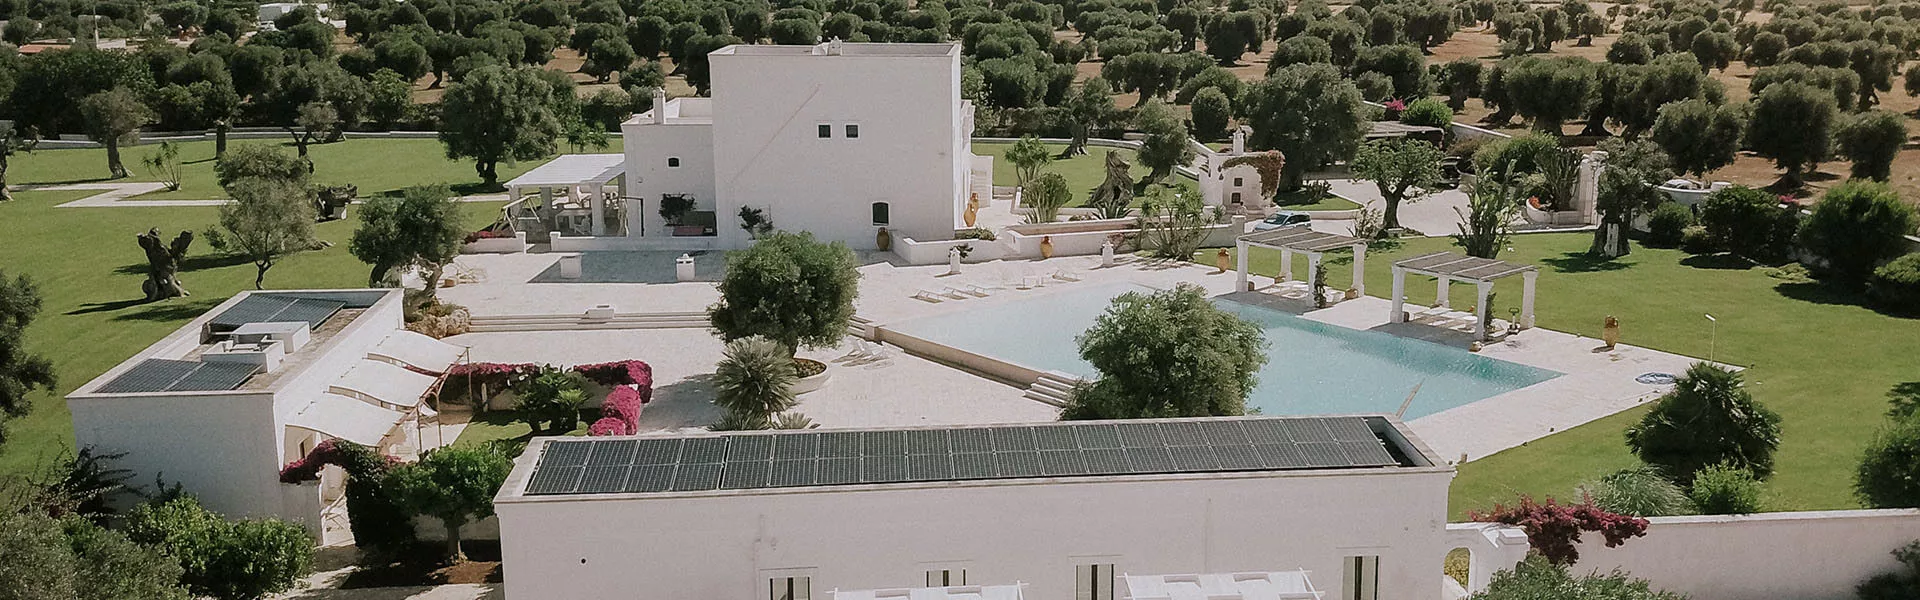 pannelli fotovoltaici di sunpower sulla casa con la piscina in Italia